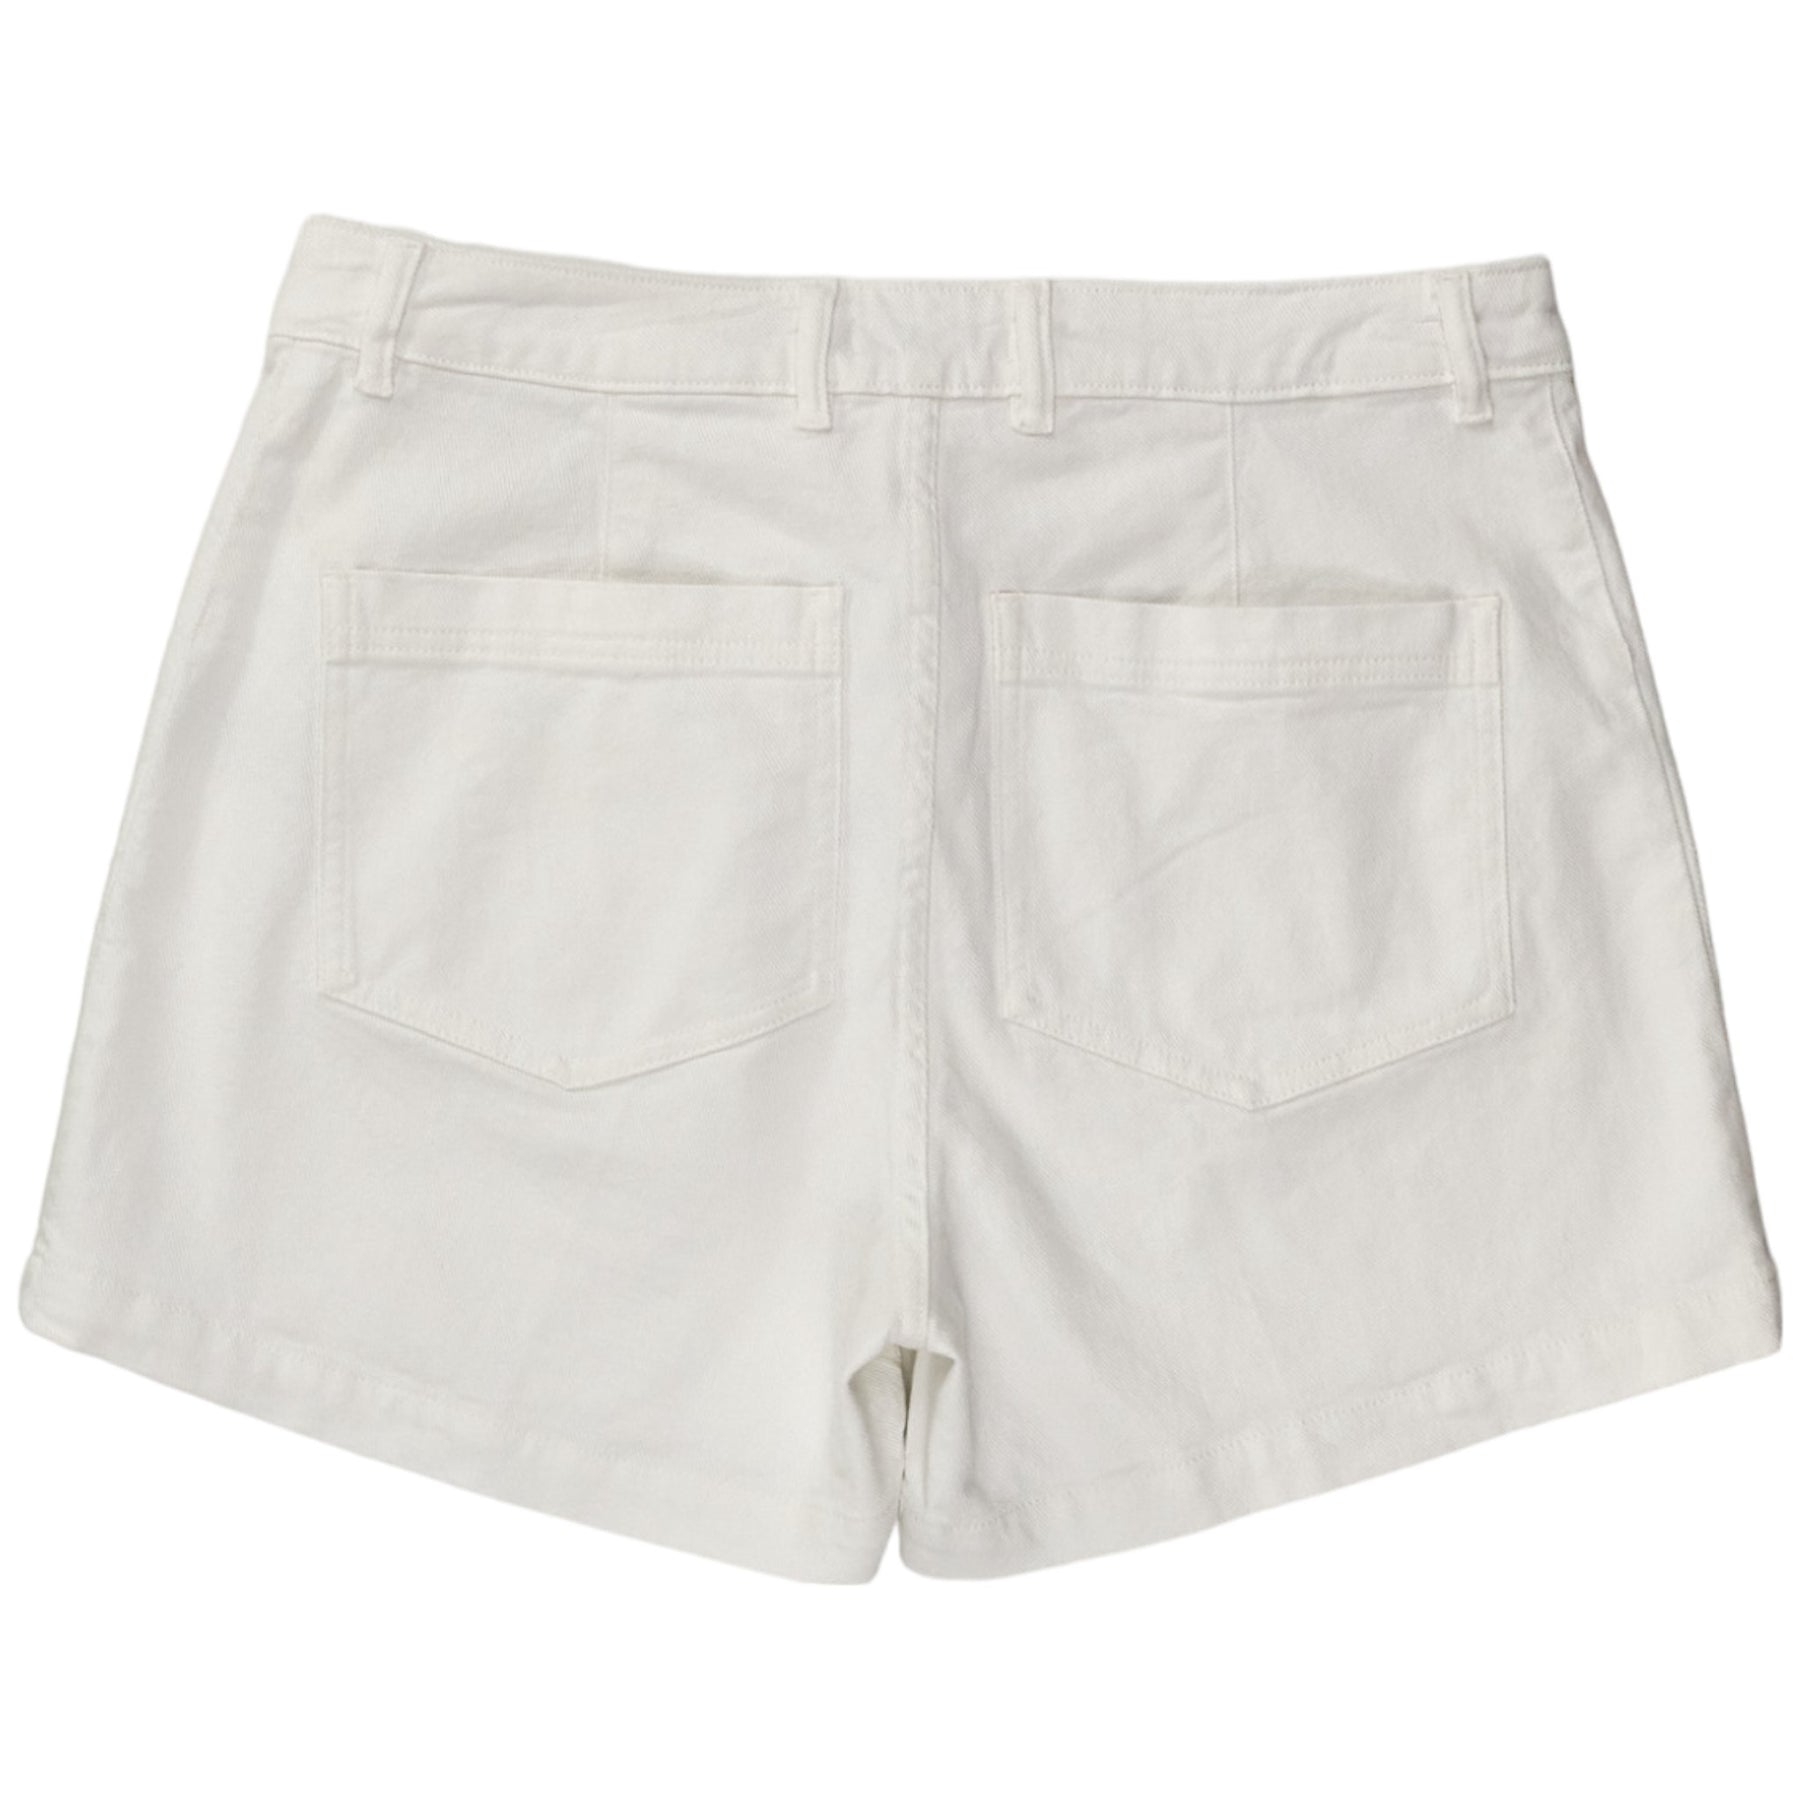 Baukjen Soft White Caitlin Shorts